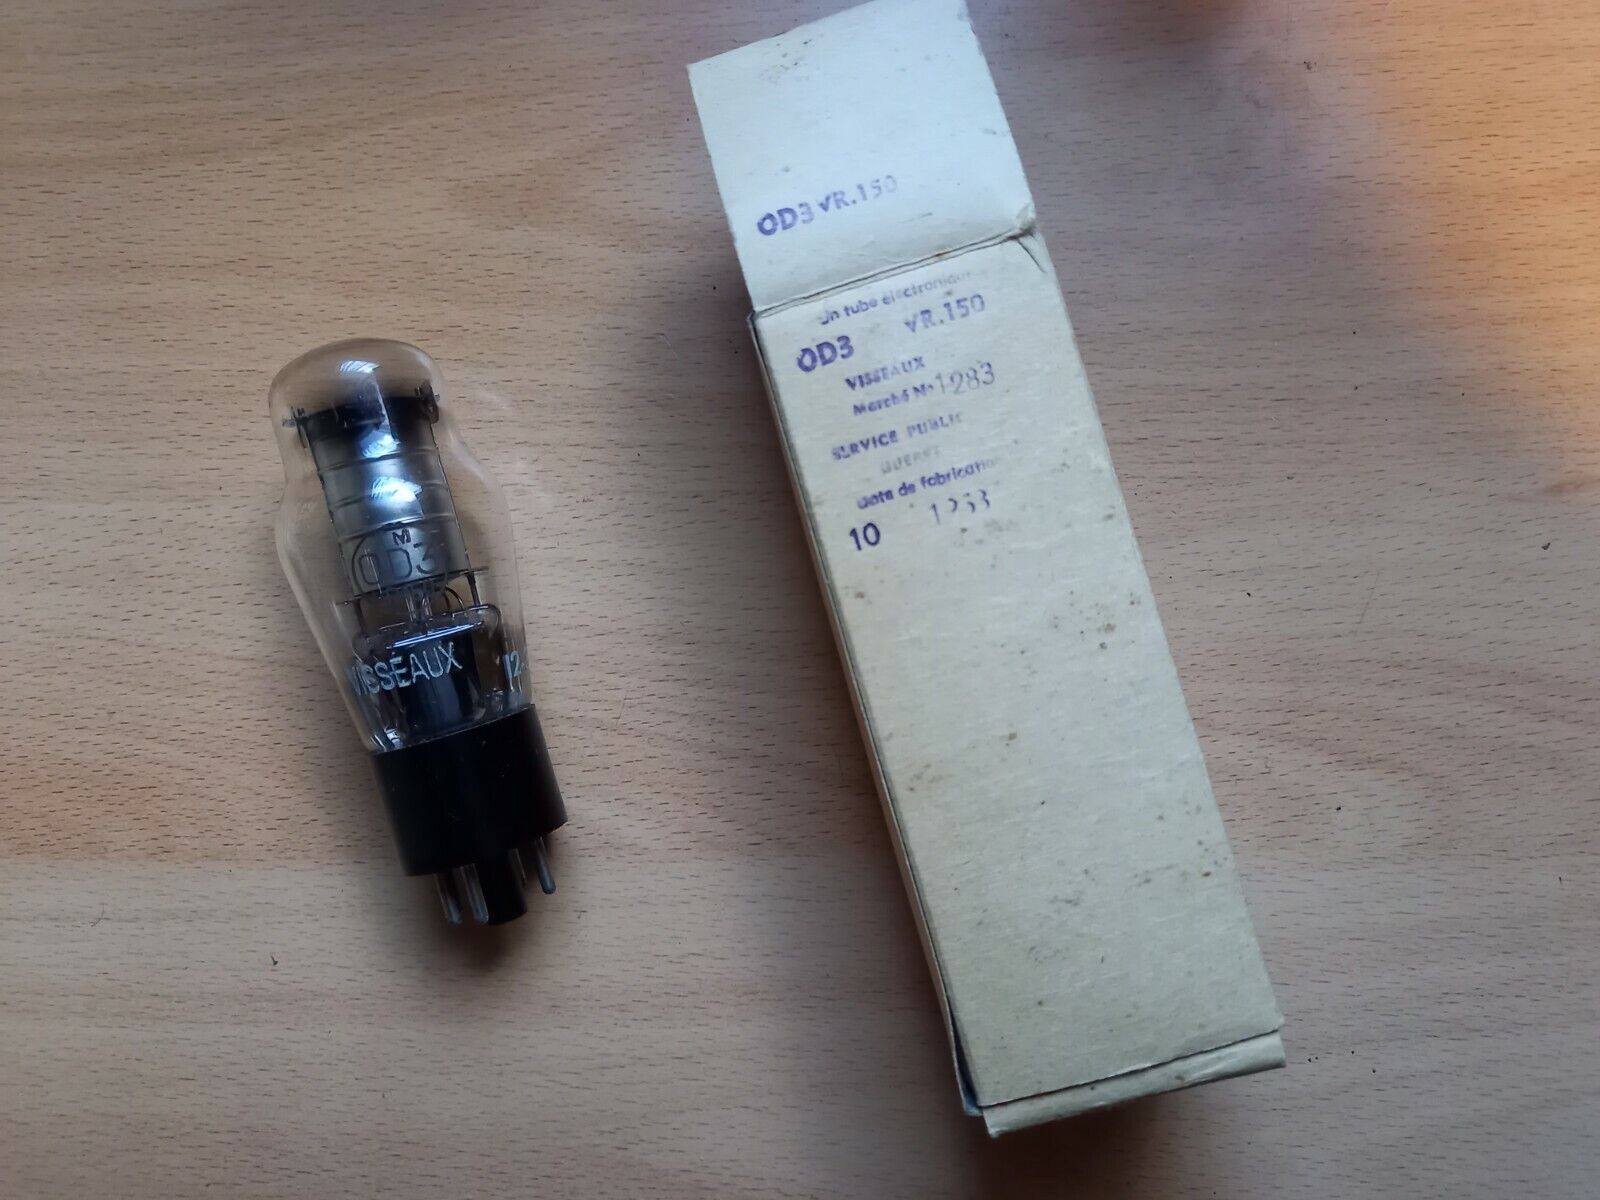 OD3 0D3 VR150 VT-139 Screws (Regulator) TUBE LAMP TSF NOS